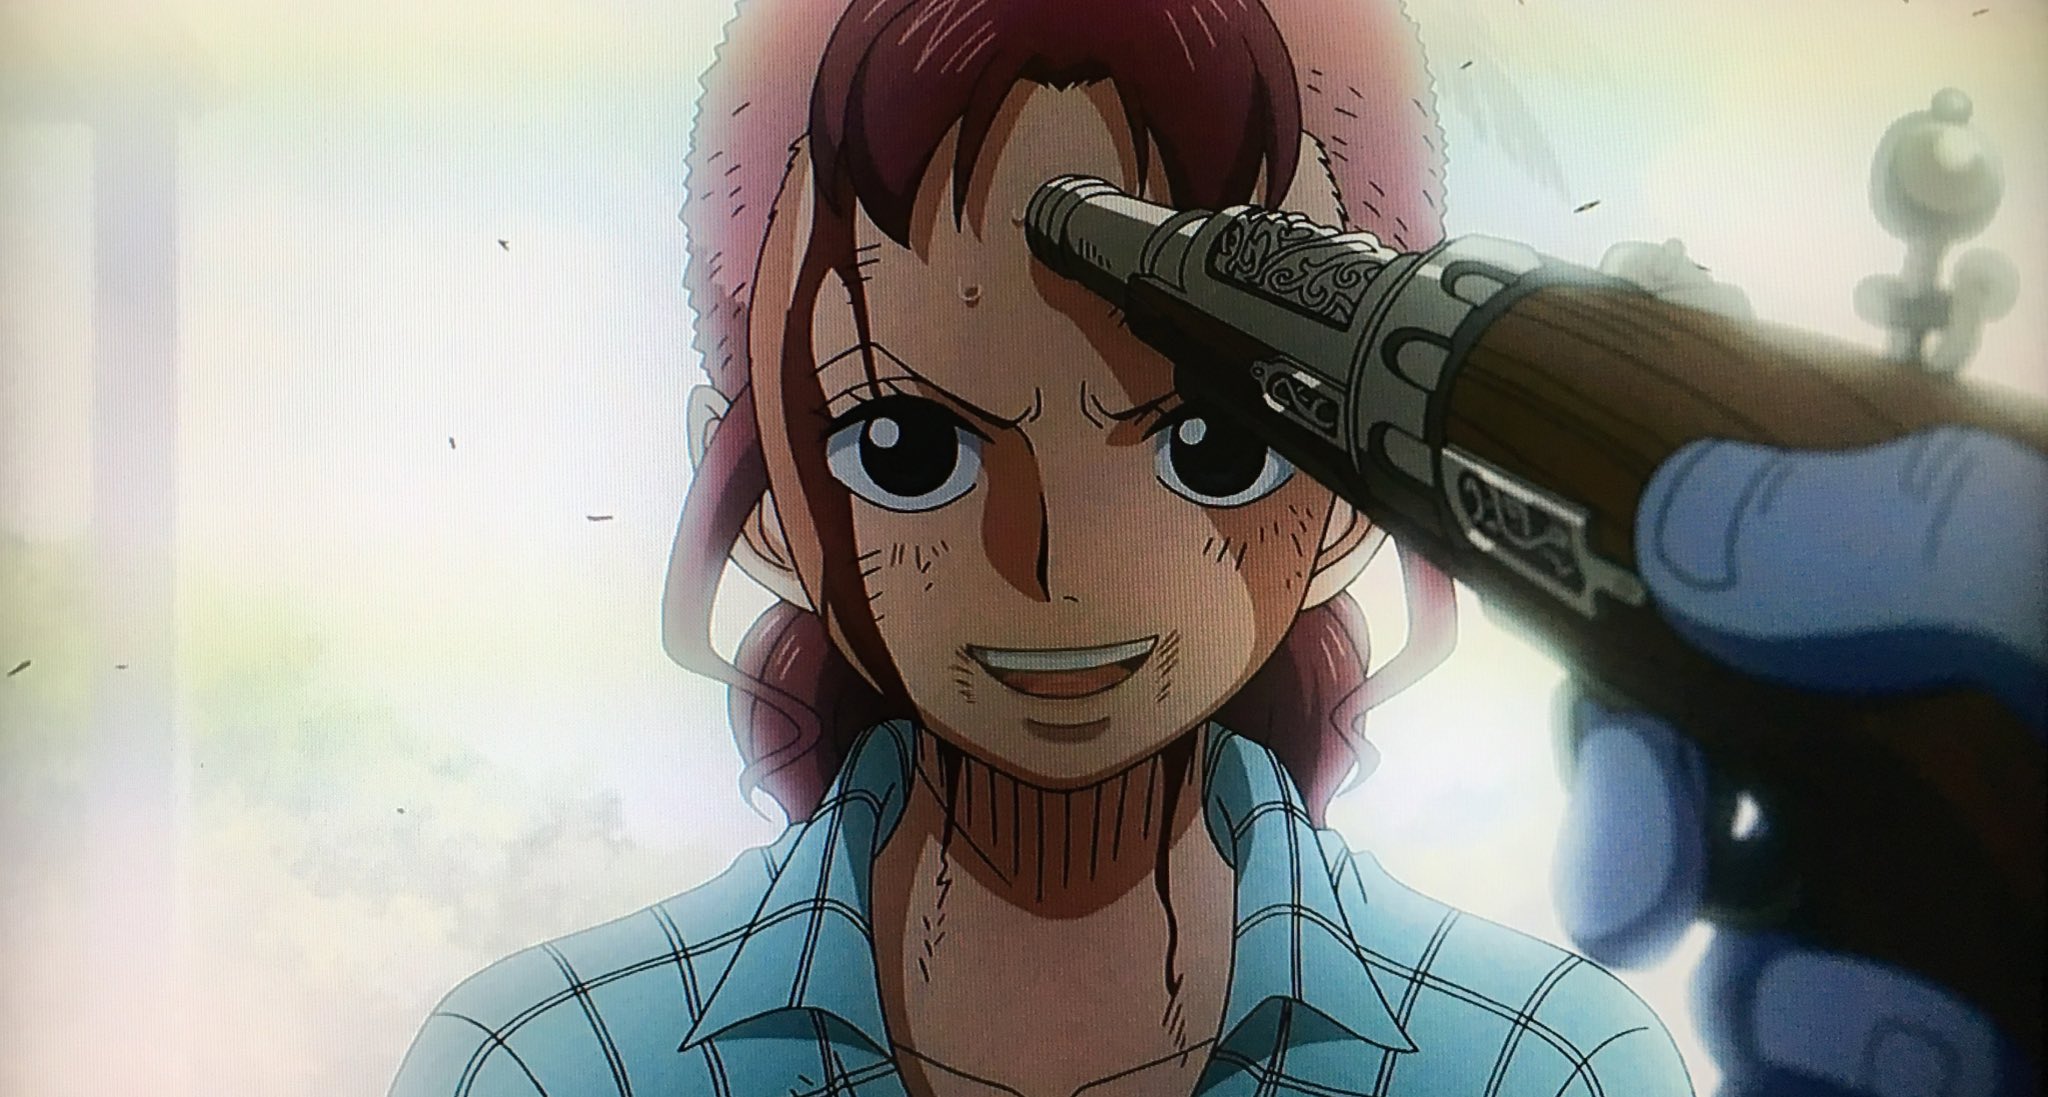 One Piece 物語開始時点で既に死亡している女性キャラクター 登場人物まとめ ワンピース 3 3 Renote リノート